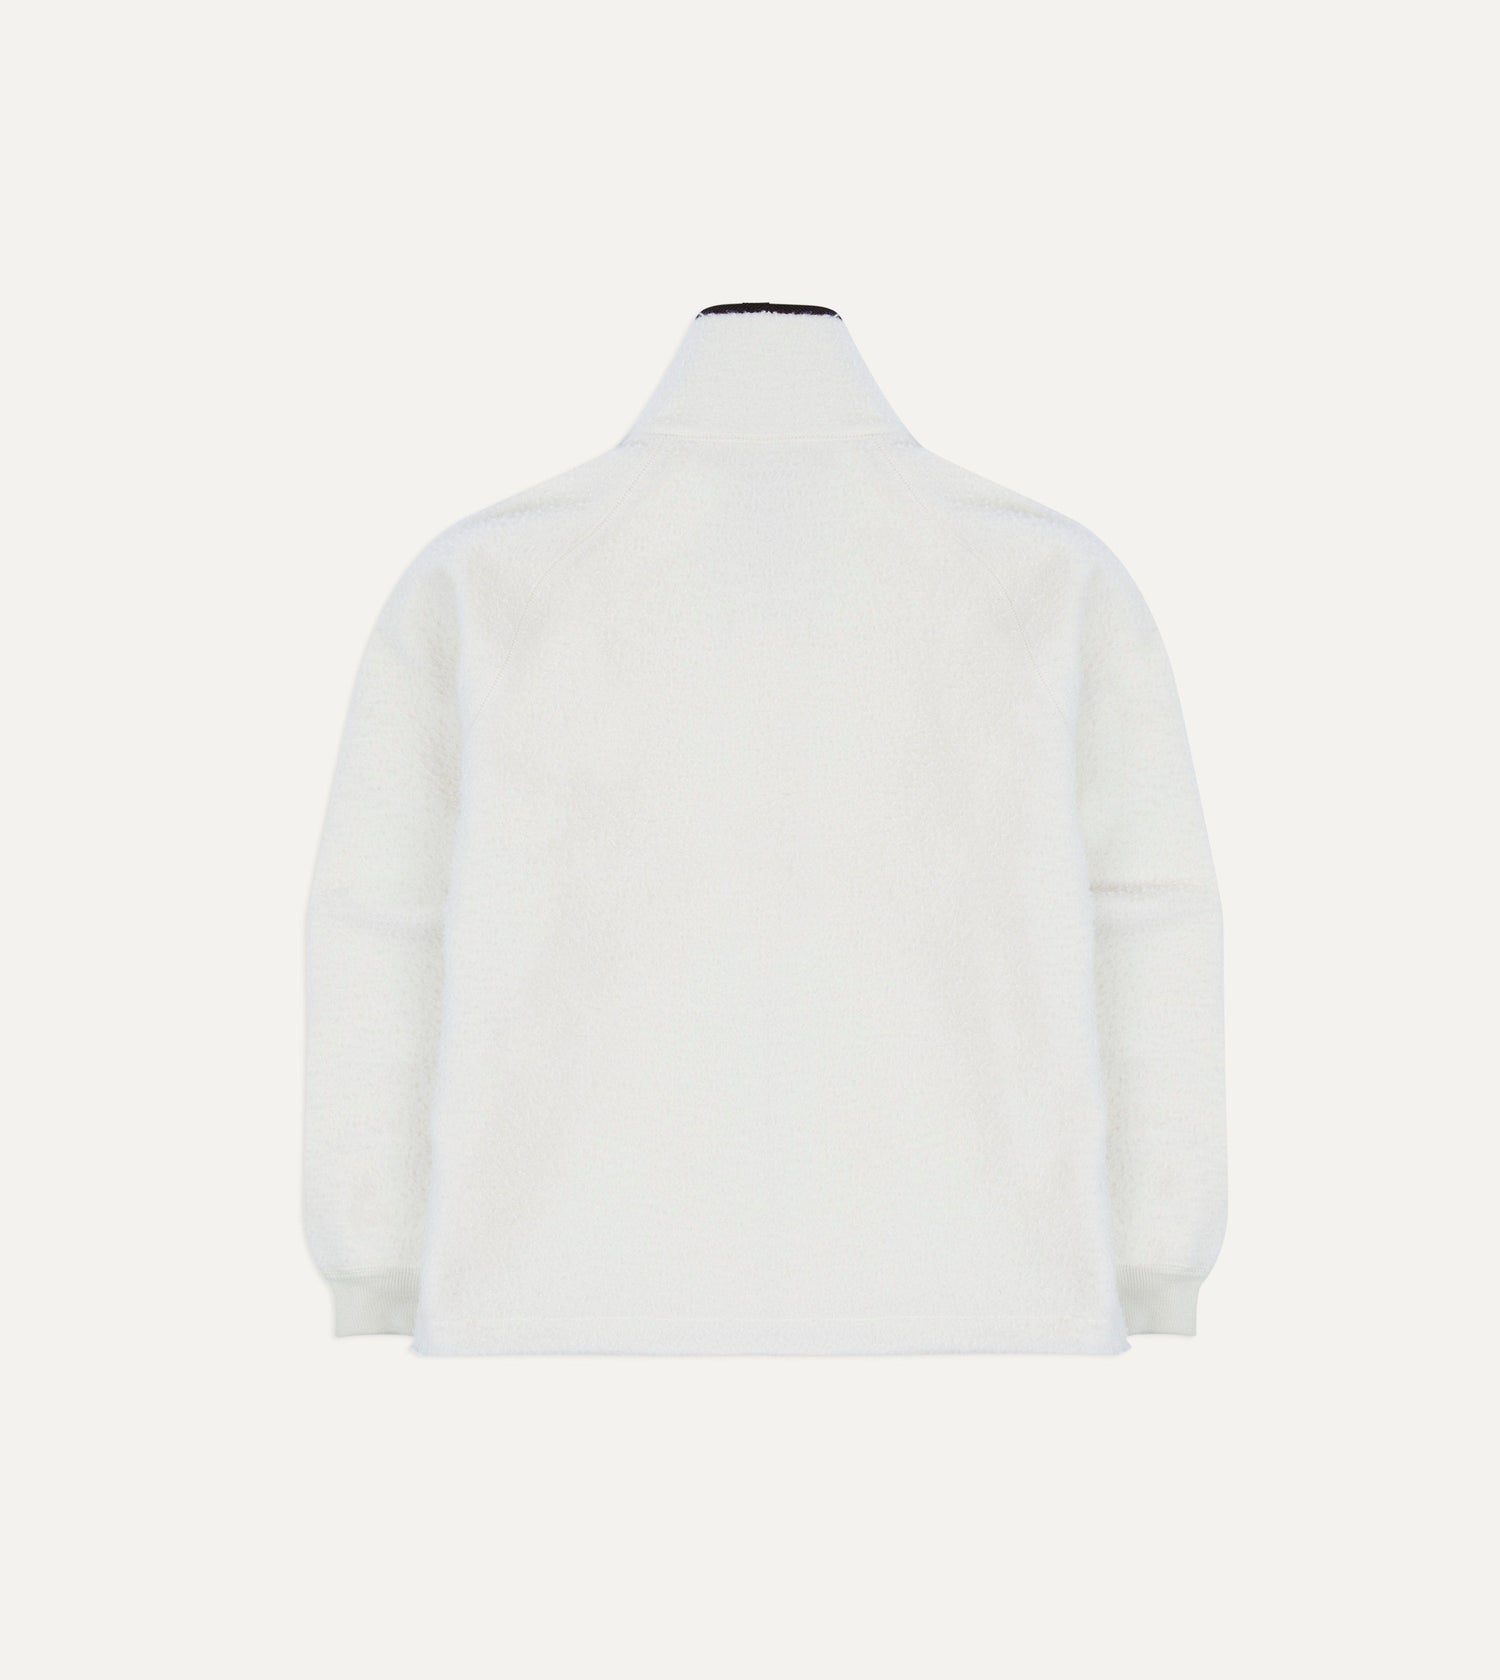 ALD / Drake's Casentino Wool Full Zip Fleece Jacket